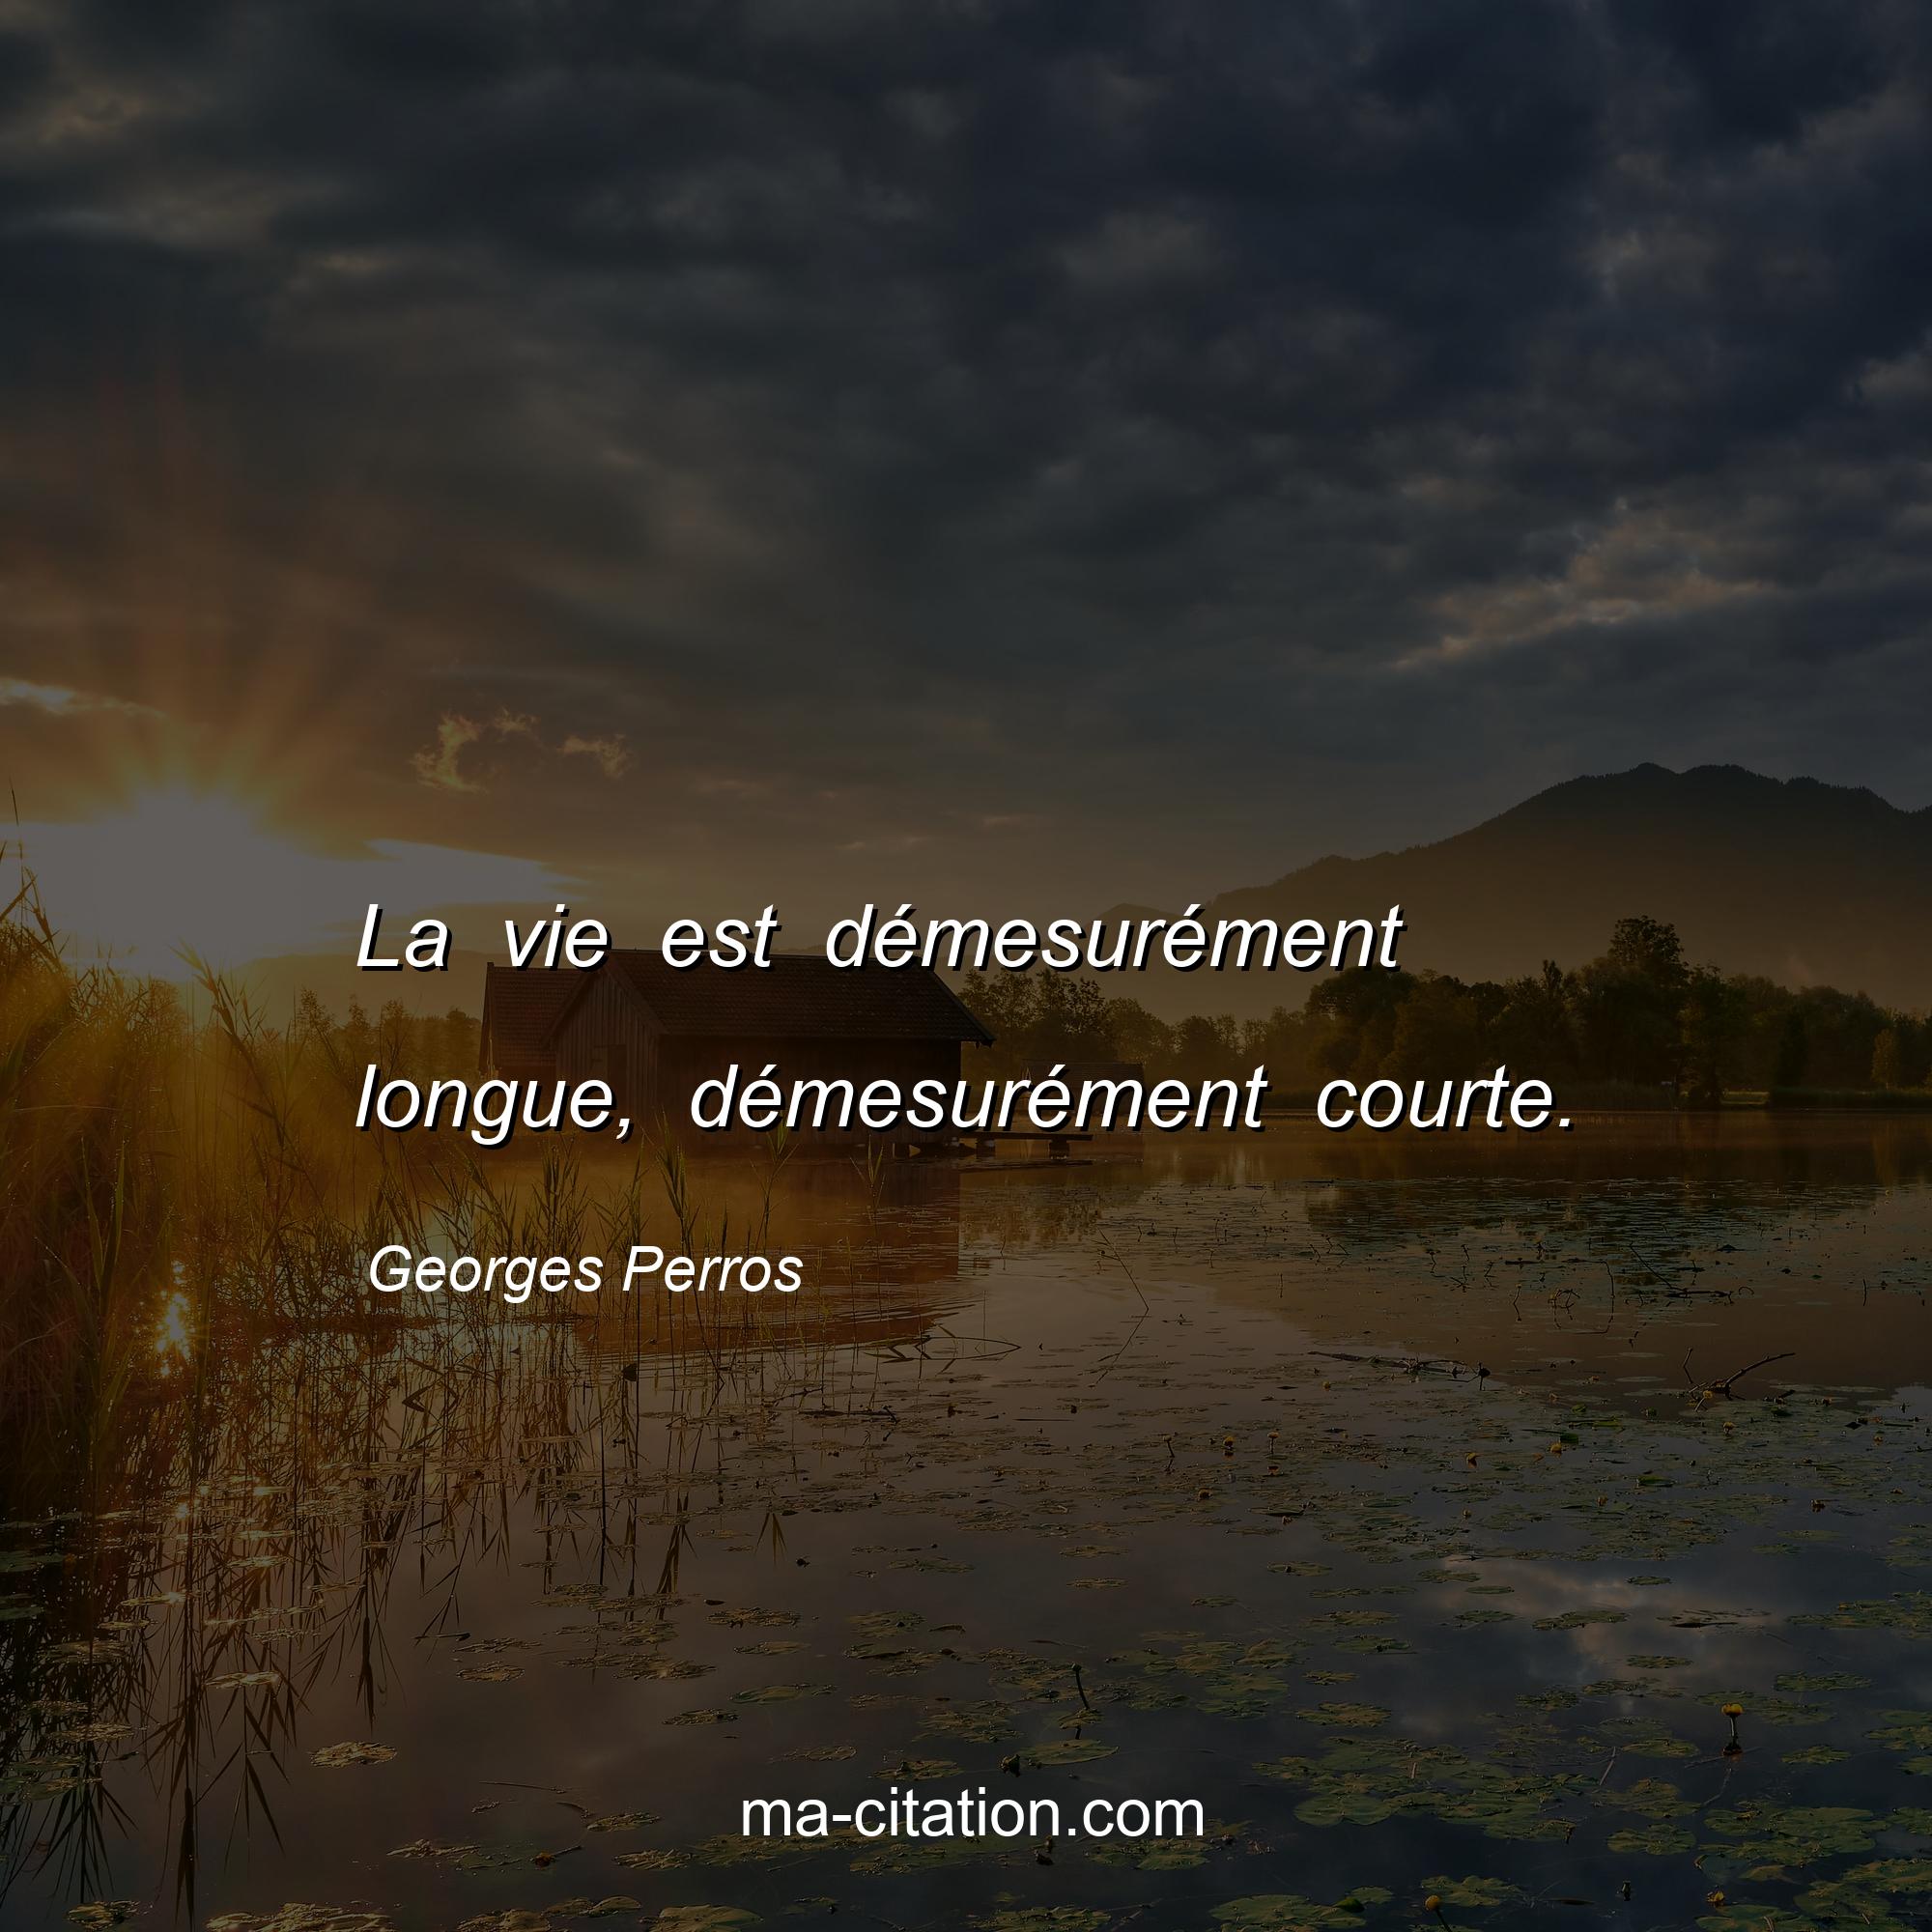 Georges Perros : La vie est démesurément longue, démesurément courte.